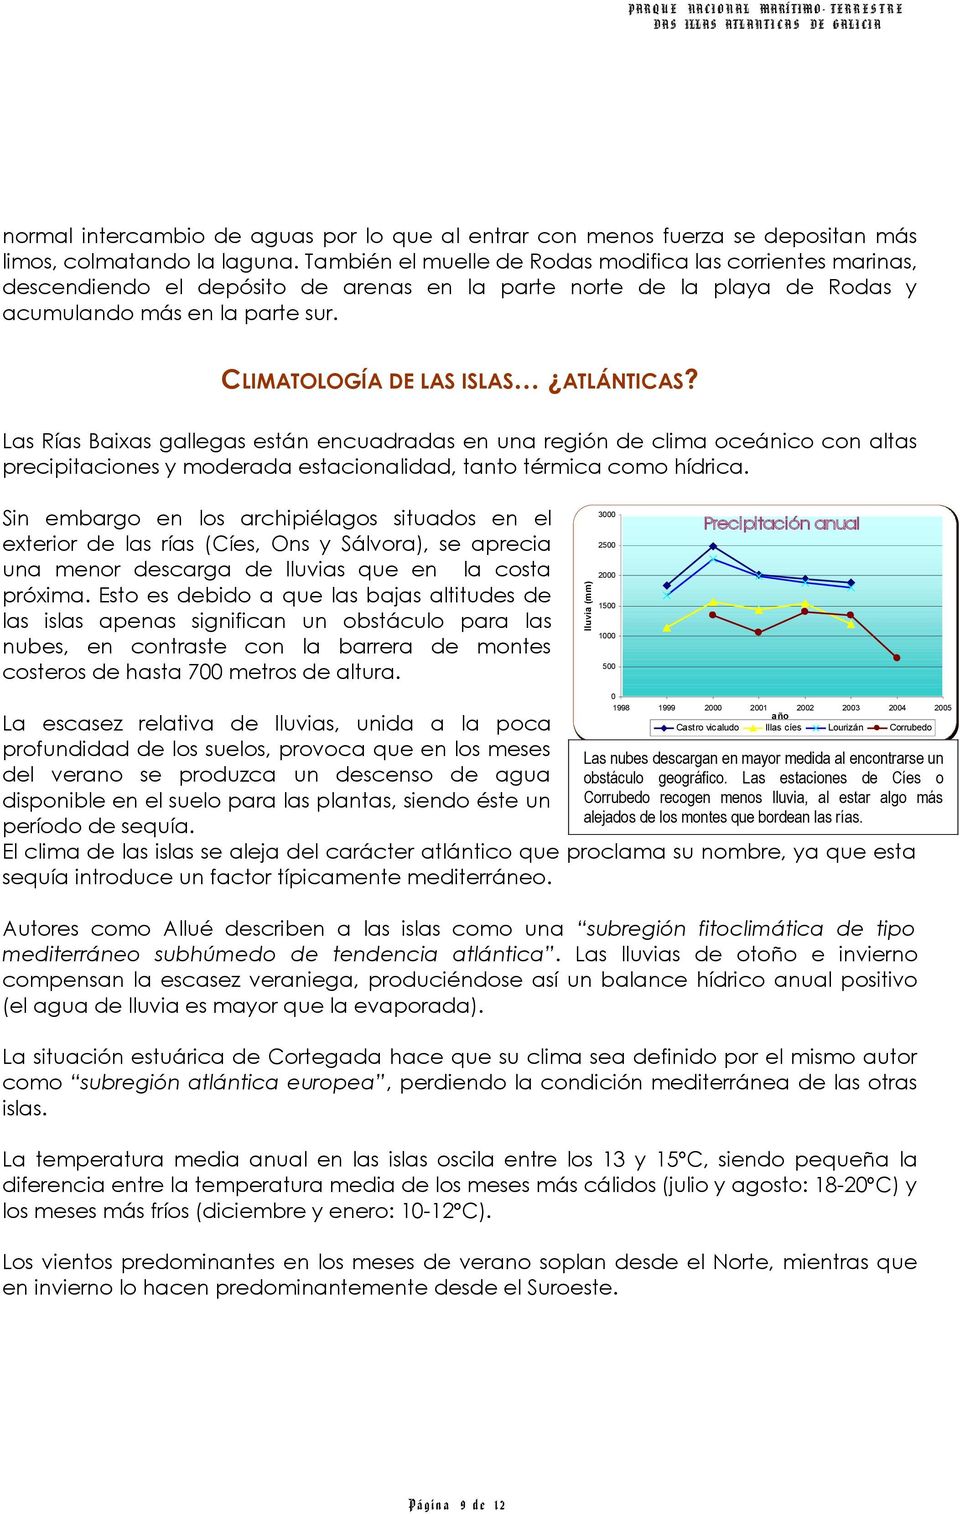 CLIMATOLOGÍA DE LAS ISLAS ATLÁNTICAS? Las Rías Baixas gallegas están encuadradas en una región de clima oceánico con altas precipitaciones y moderada estacionalidad, tanto térmica como hídrica.